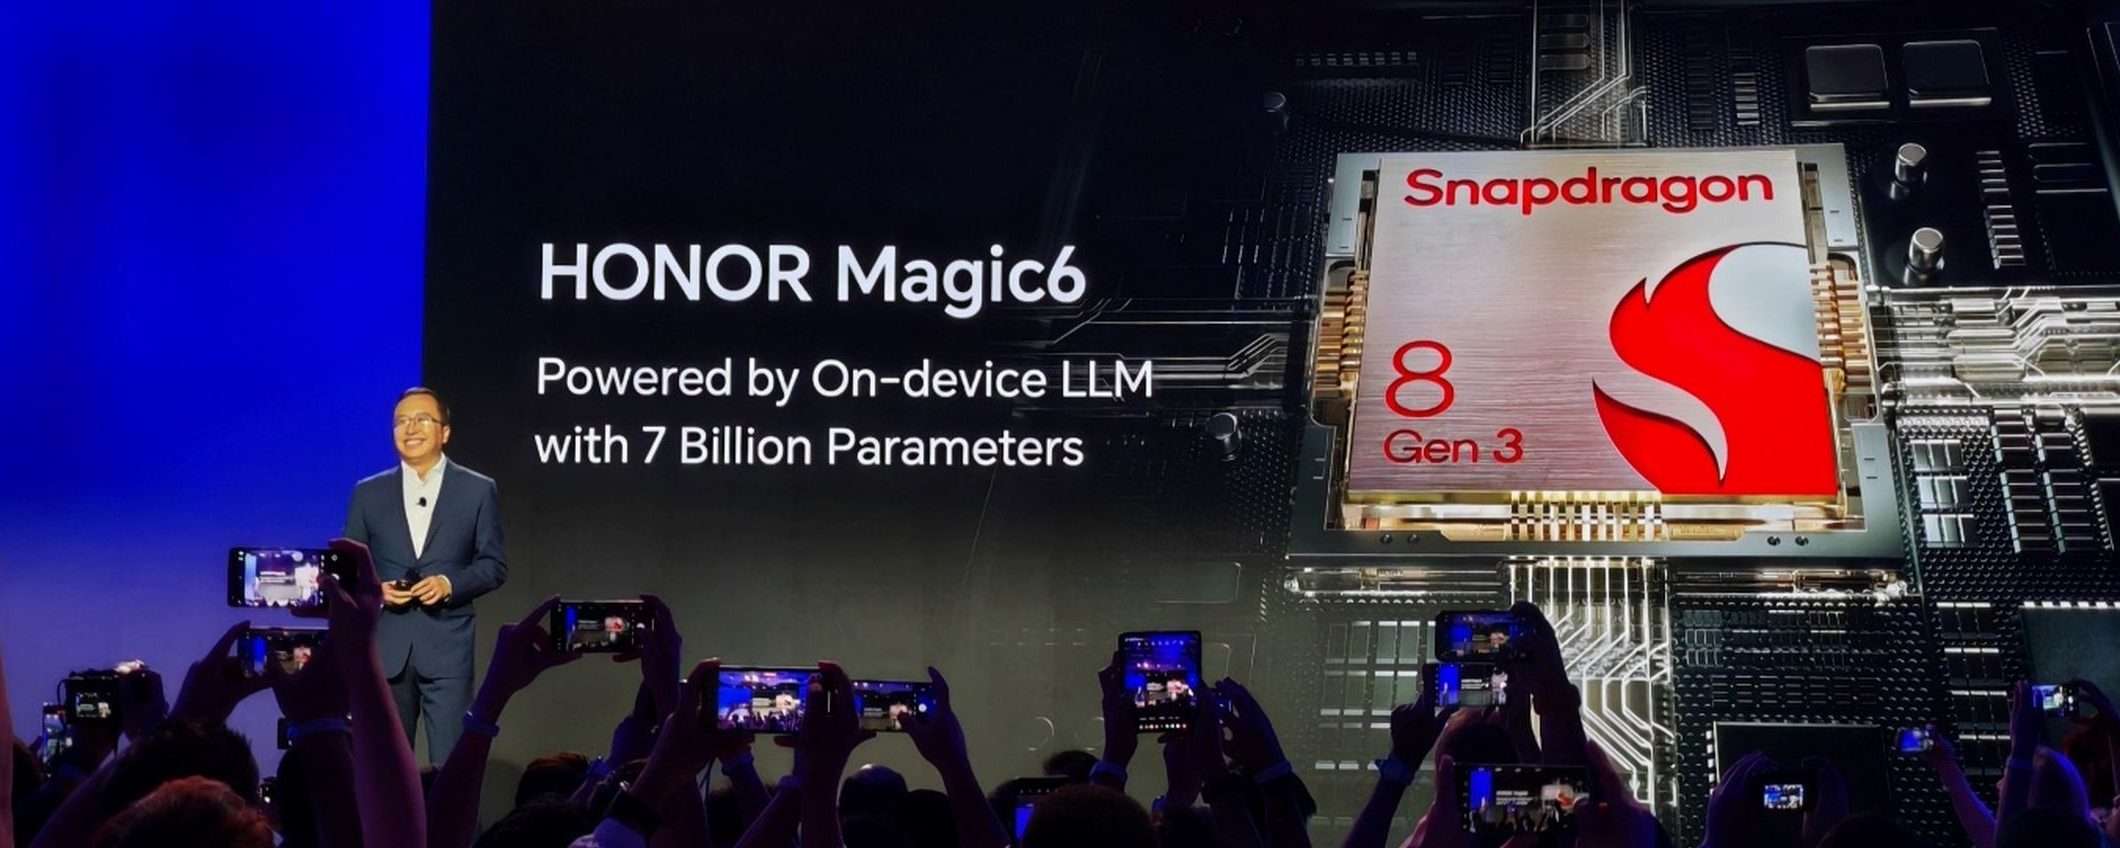 Honor Magic 6: LLM on-device e controllo con gli occhi